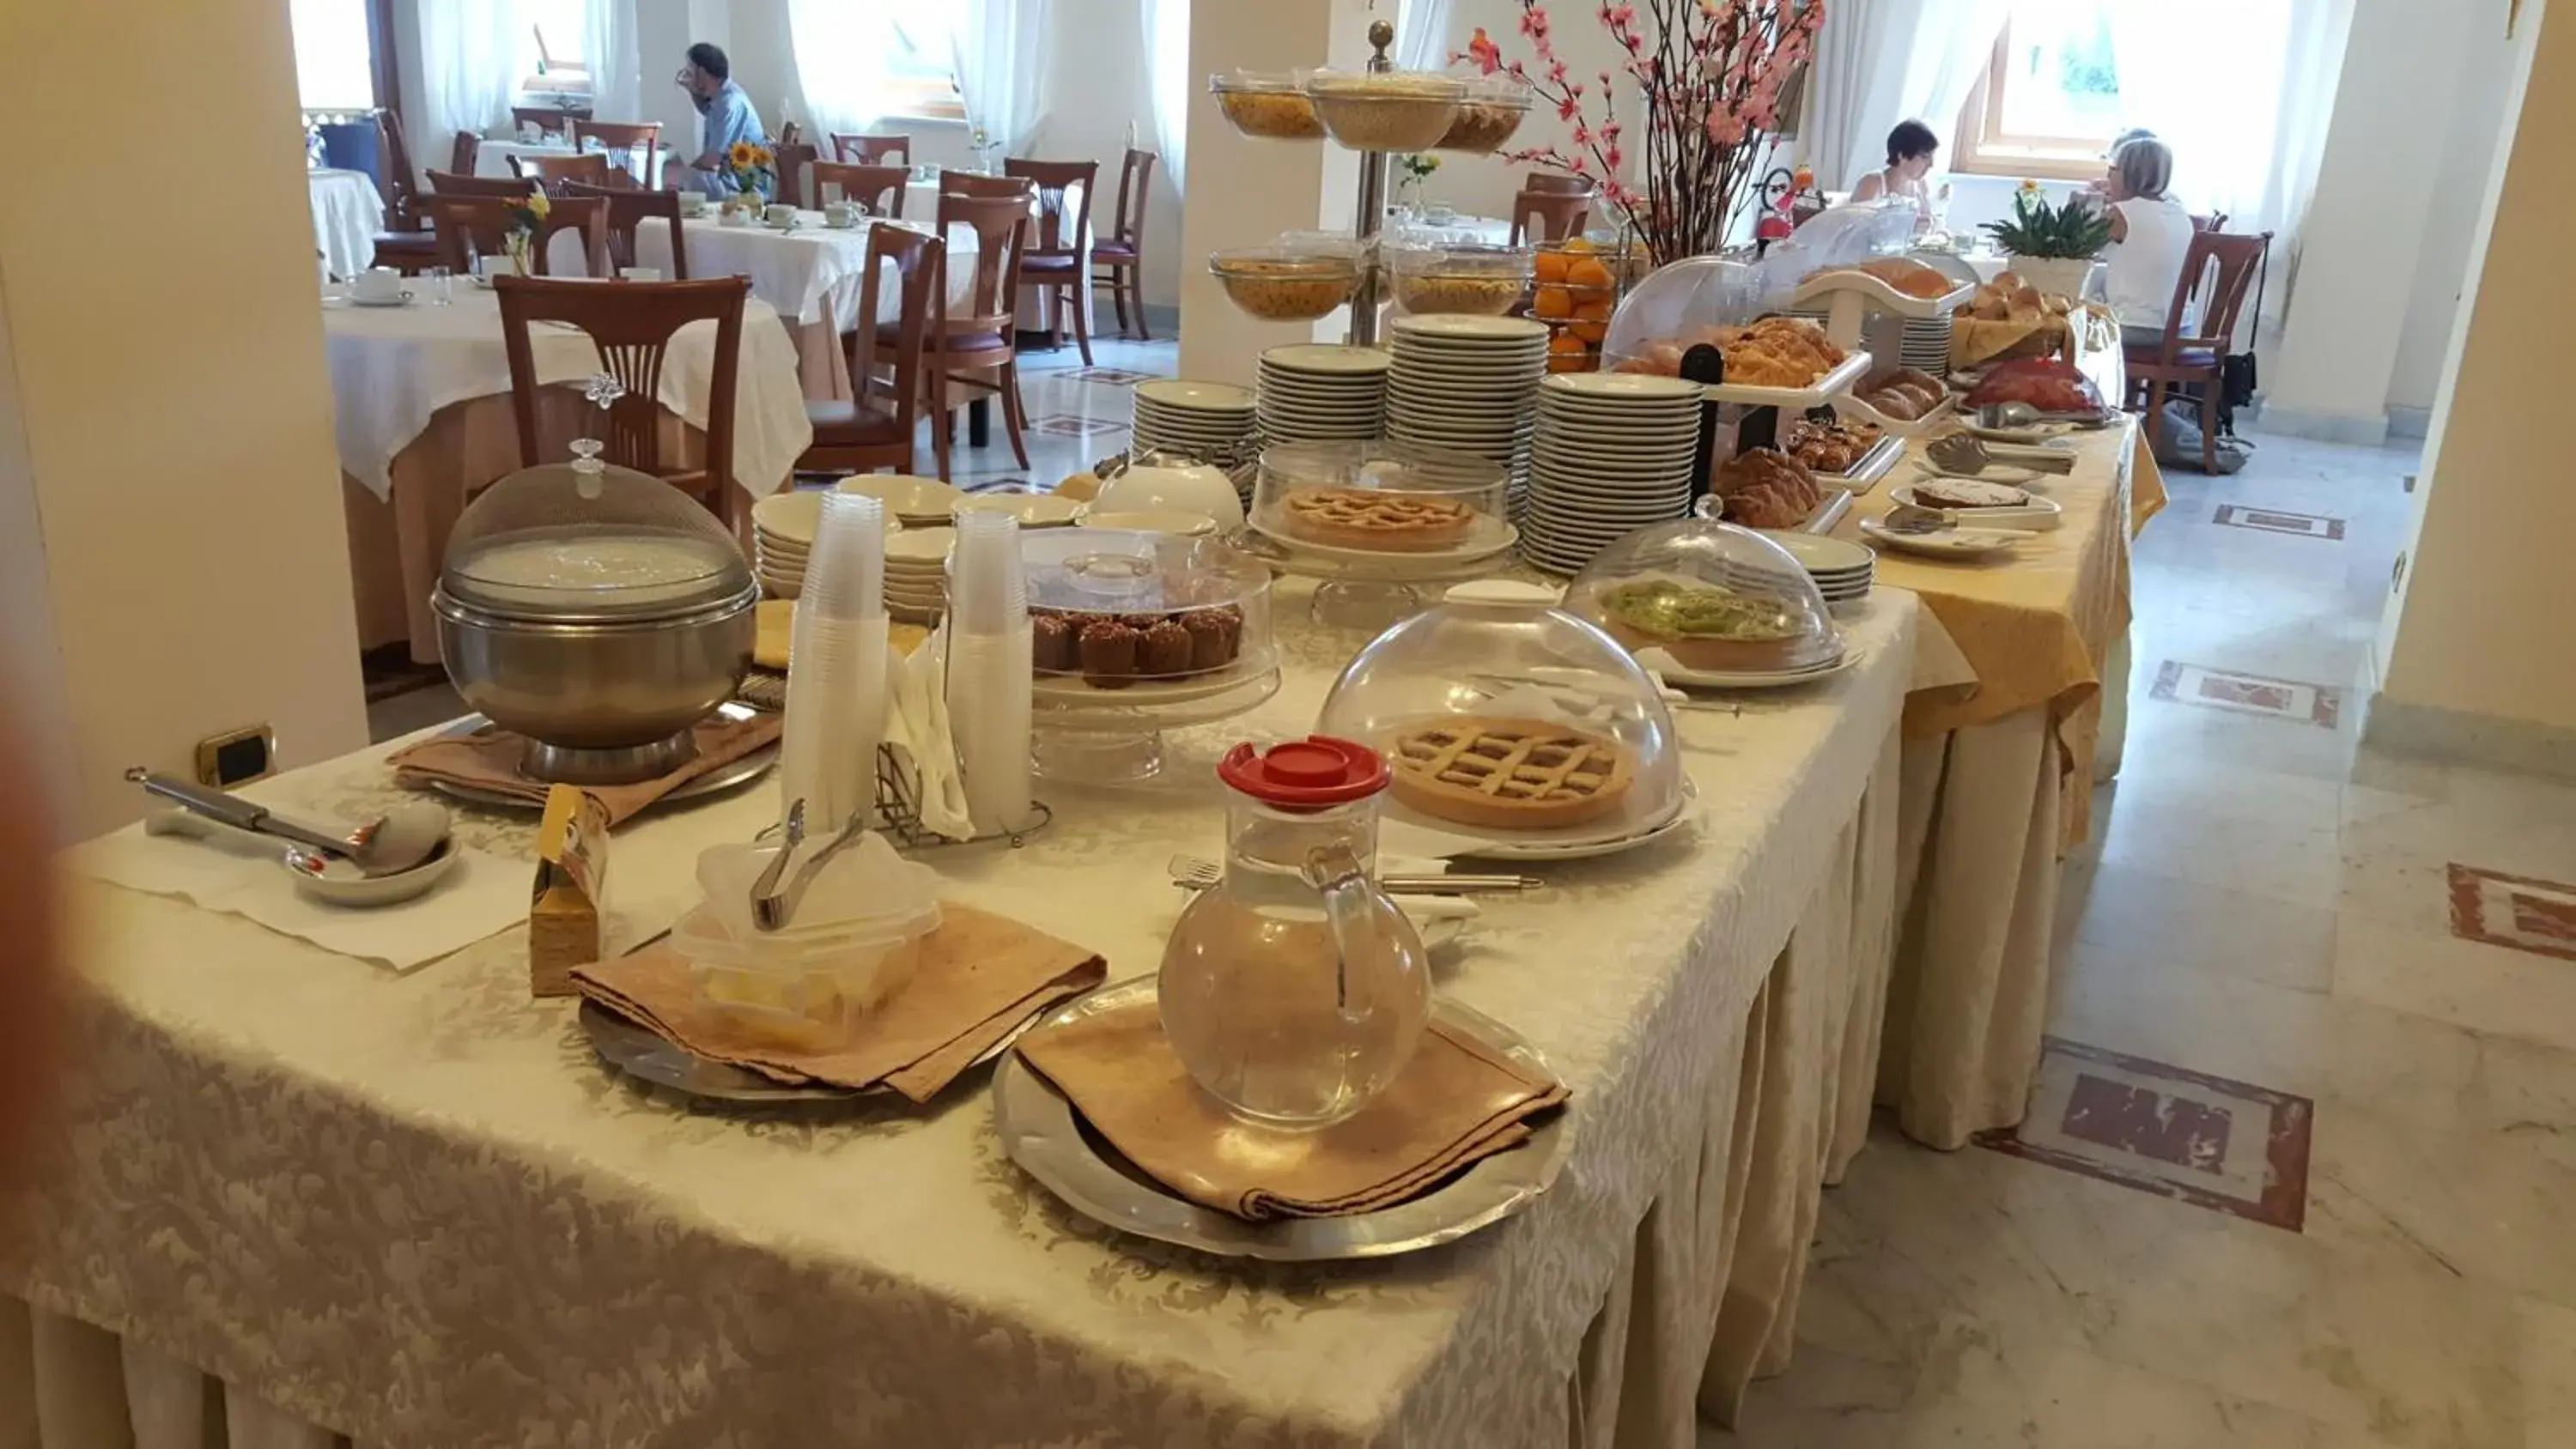 Buffet breakfast in Hotel Villa Igea